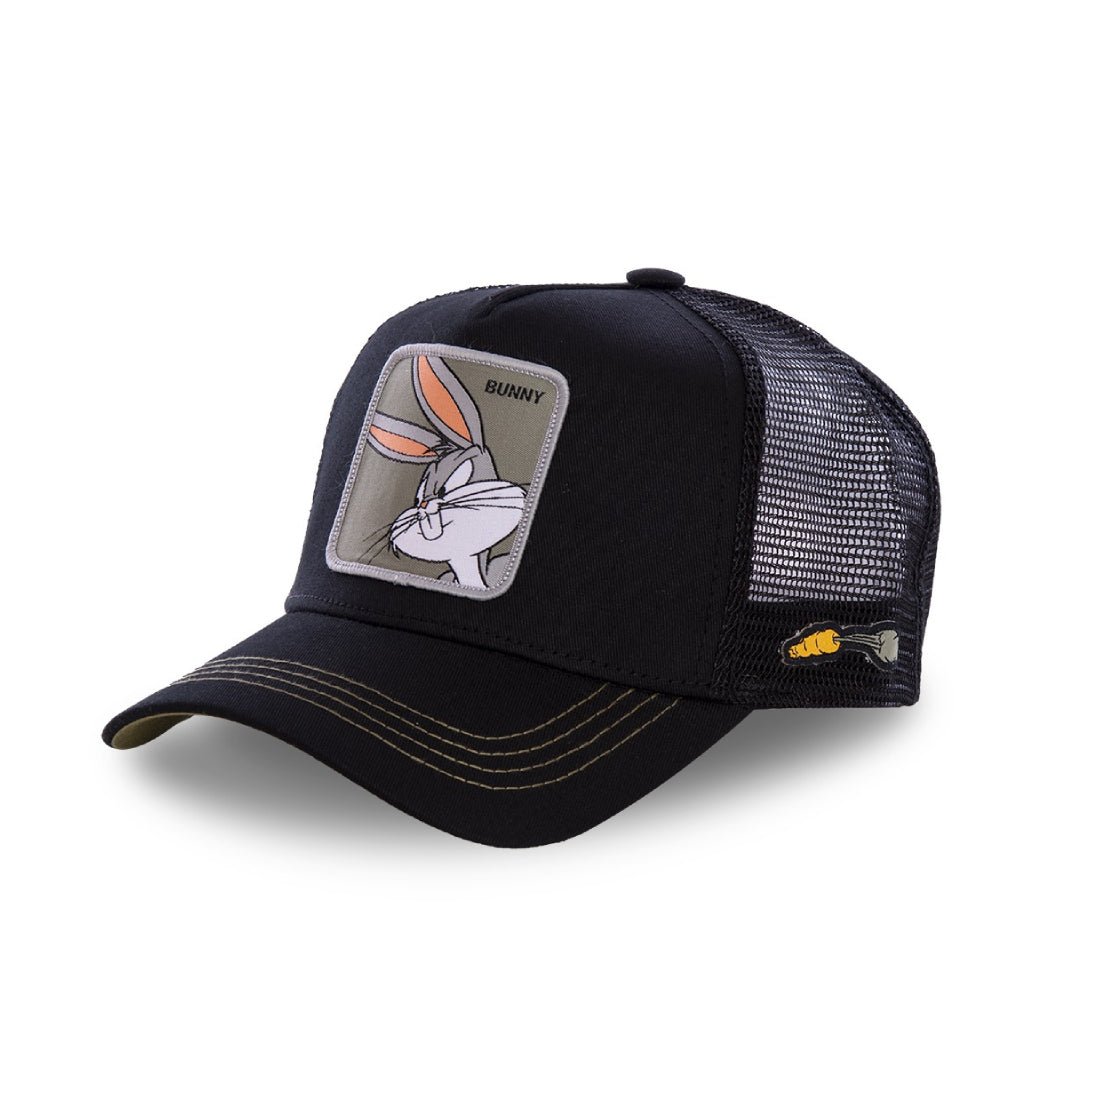 Queue Caps Looney Tunes Bunny Cap - Black - قبعة - Store 974 | ستور ٩٧٤